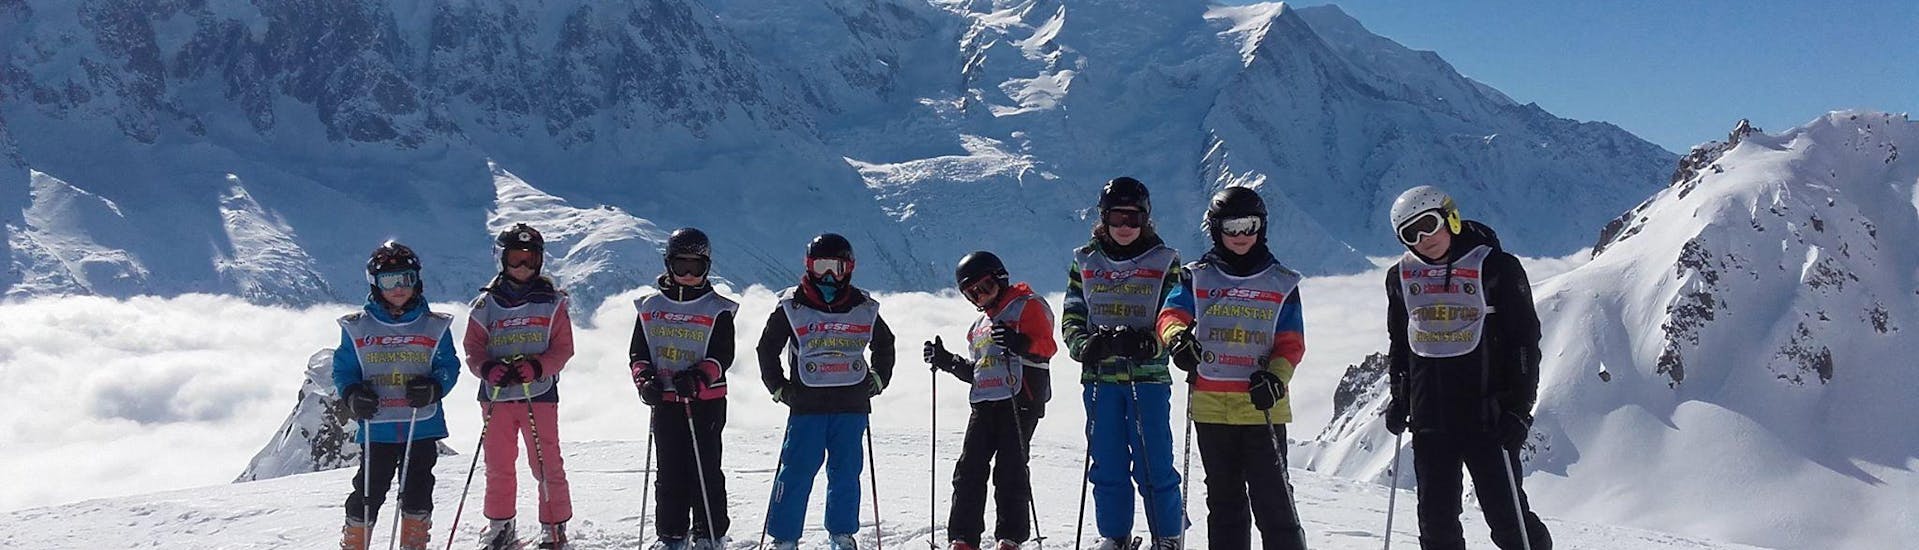 Lezioni di sci per bambini a partire da 5 anni per avanzati.